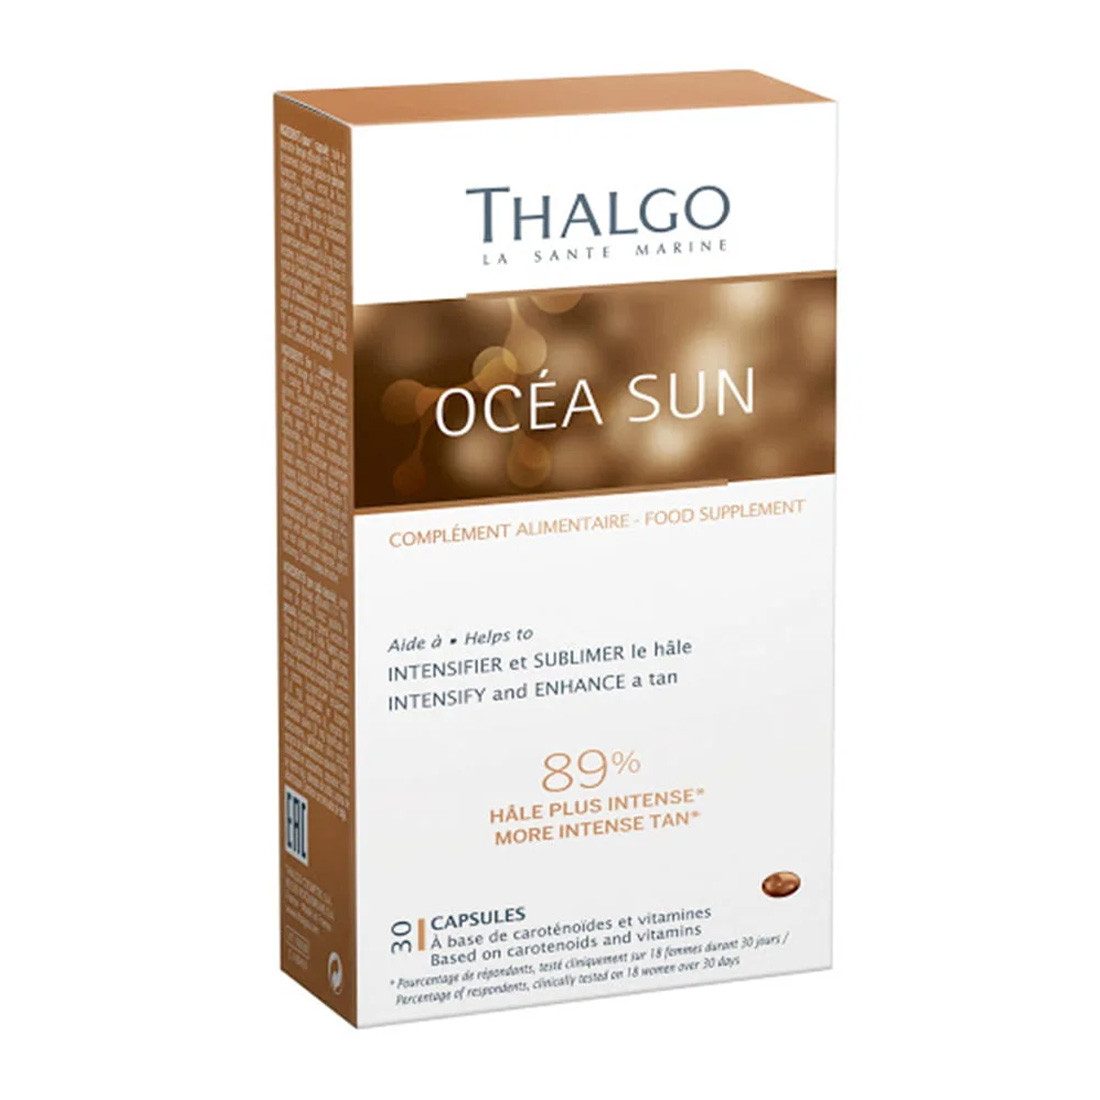 Антиоксидант для защиты кожи, глаз и волос Thalgo Ocean Sun